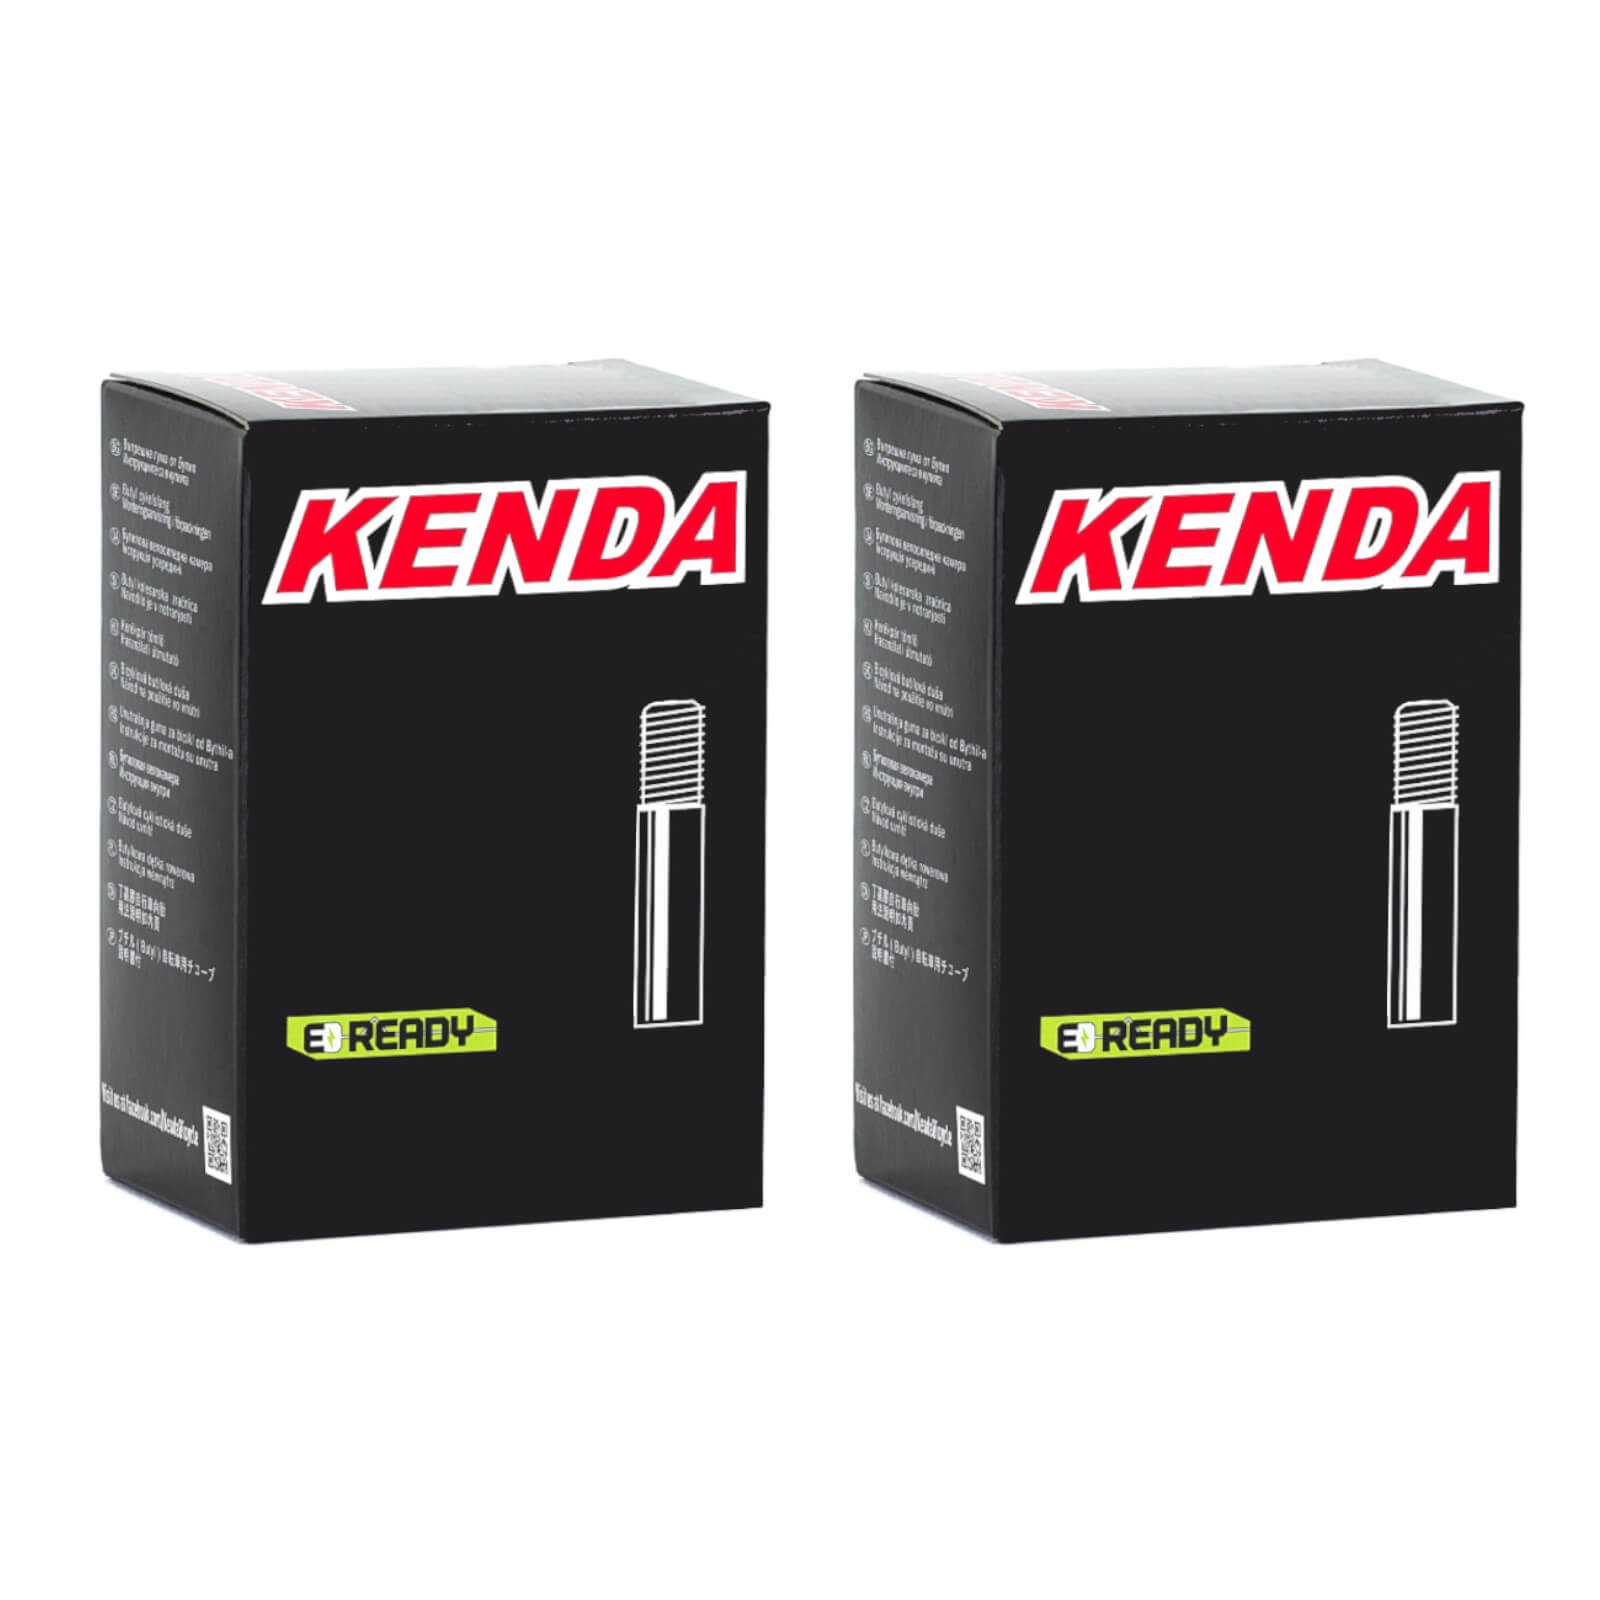 Kenda 700x45-50c 700c Schrader Valve Bike Inner Tube Pack of 2